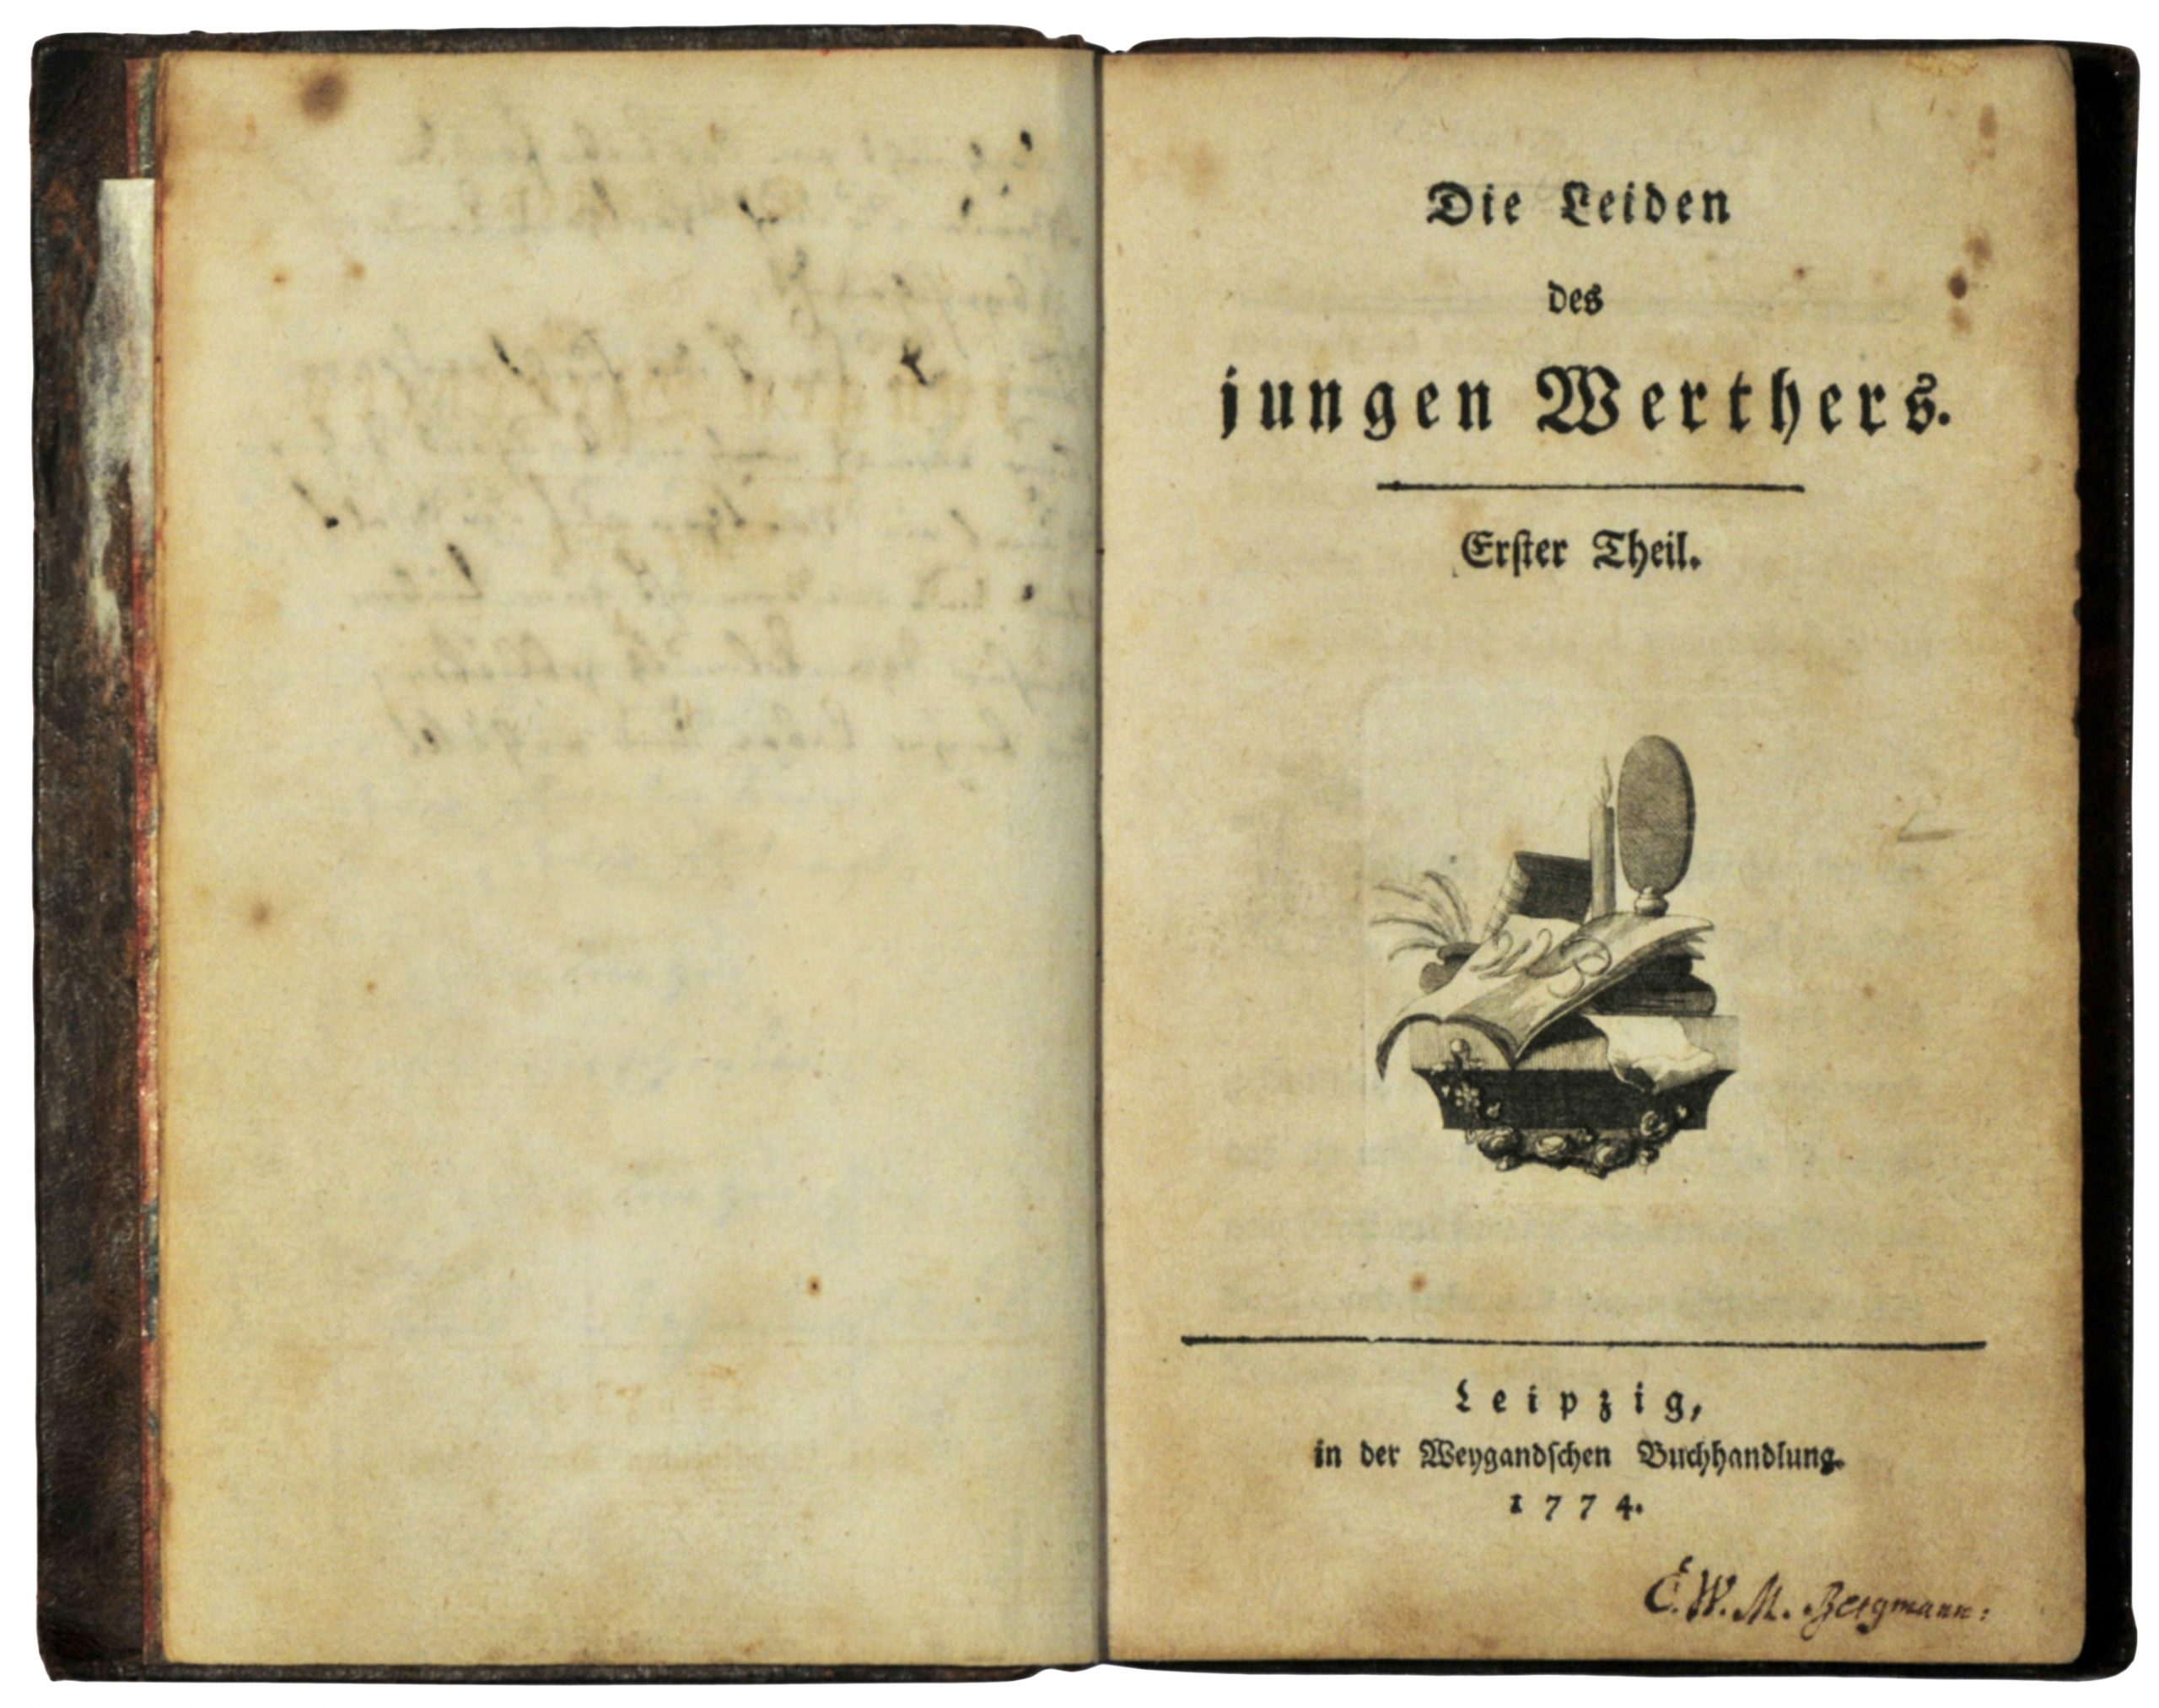 La prima edizione del "Werther" di Goethe, 1774 ©Wikipedia CC BY-SA 3.0 https://de.wikipedia.org/wiki/Sturm_und_Drang#/media/Datei:Goethe_1774.JPG